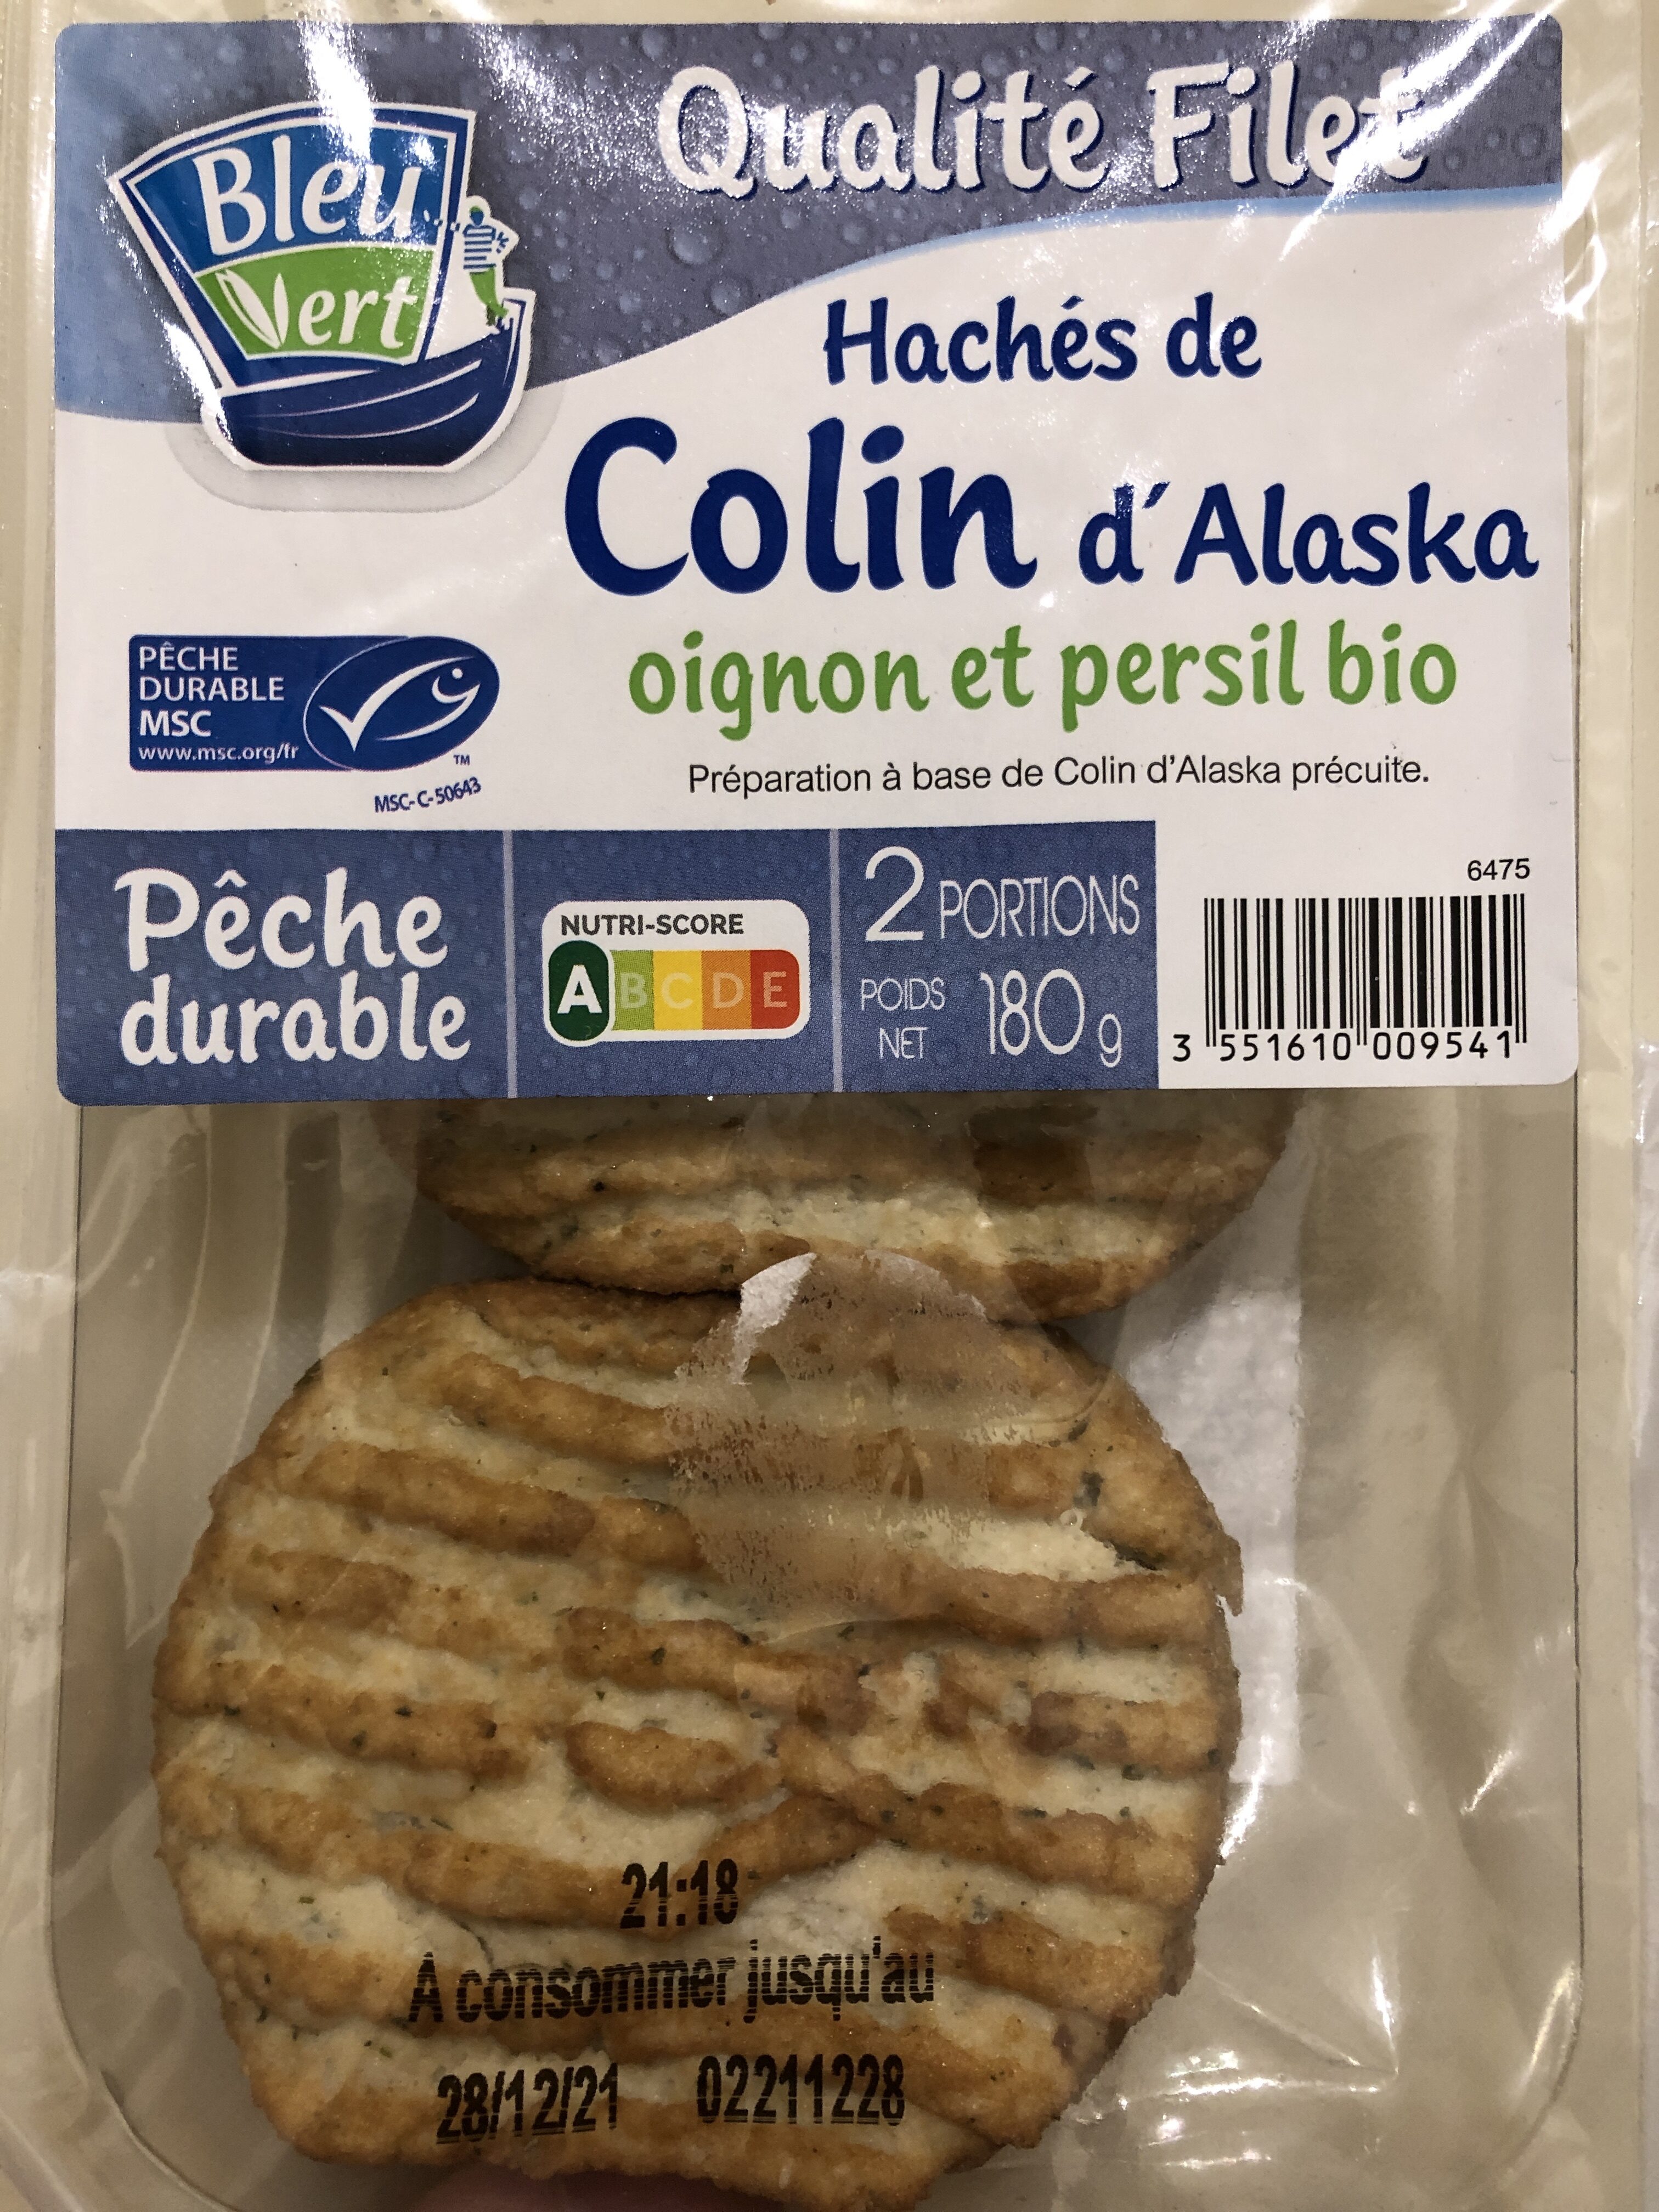 Hachés de Colin d'Alaska oignon et persil bio - Produit